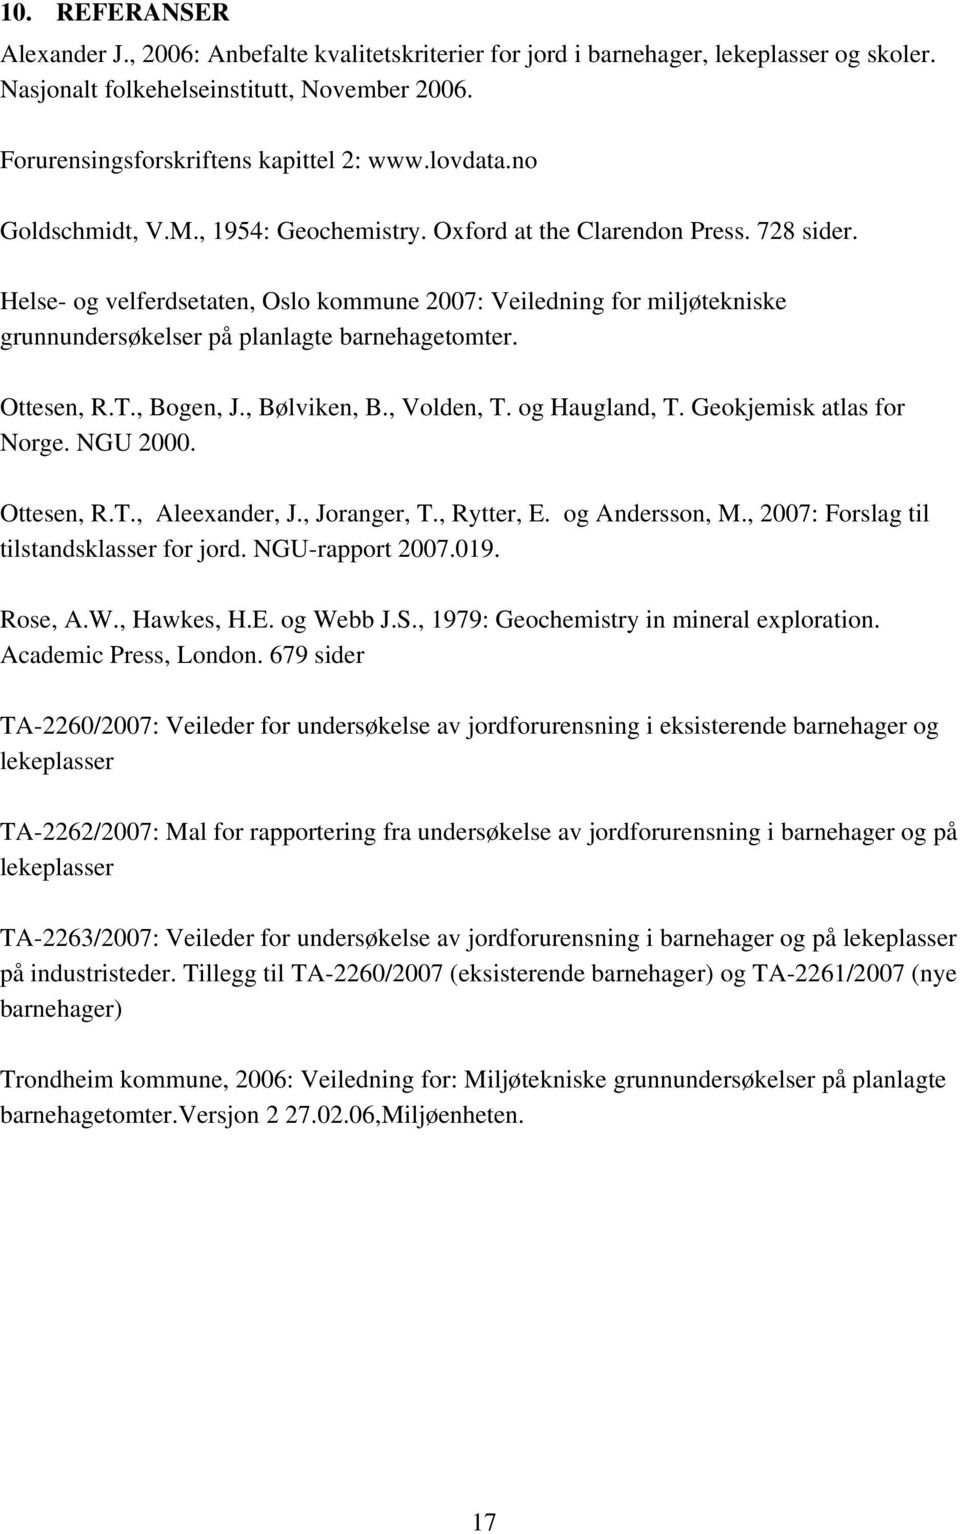 Helse- og velferdsetaten, Oslo kommune 2007: Veiledning for miljøtekniske grunnundersøkelser på planlagte barnehagetomter. Ottesen, R.T., Bogen, J., Bølviken, B., Volden, T. og Haugland, T.